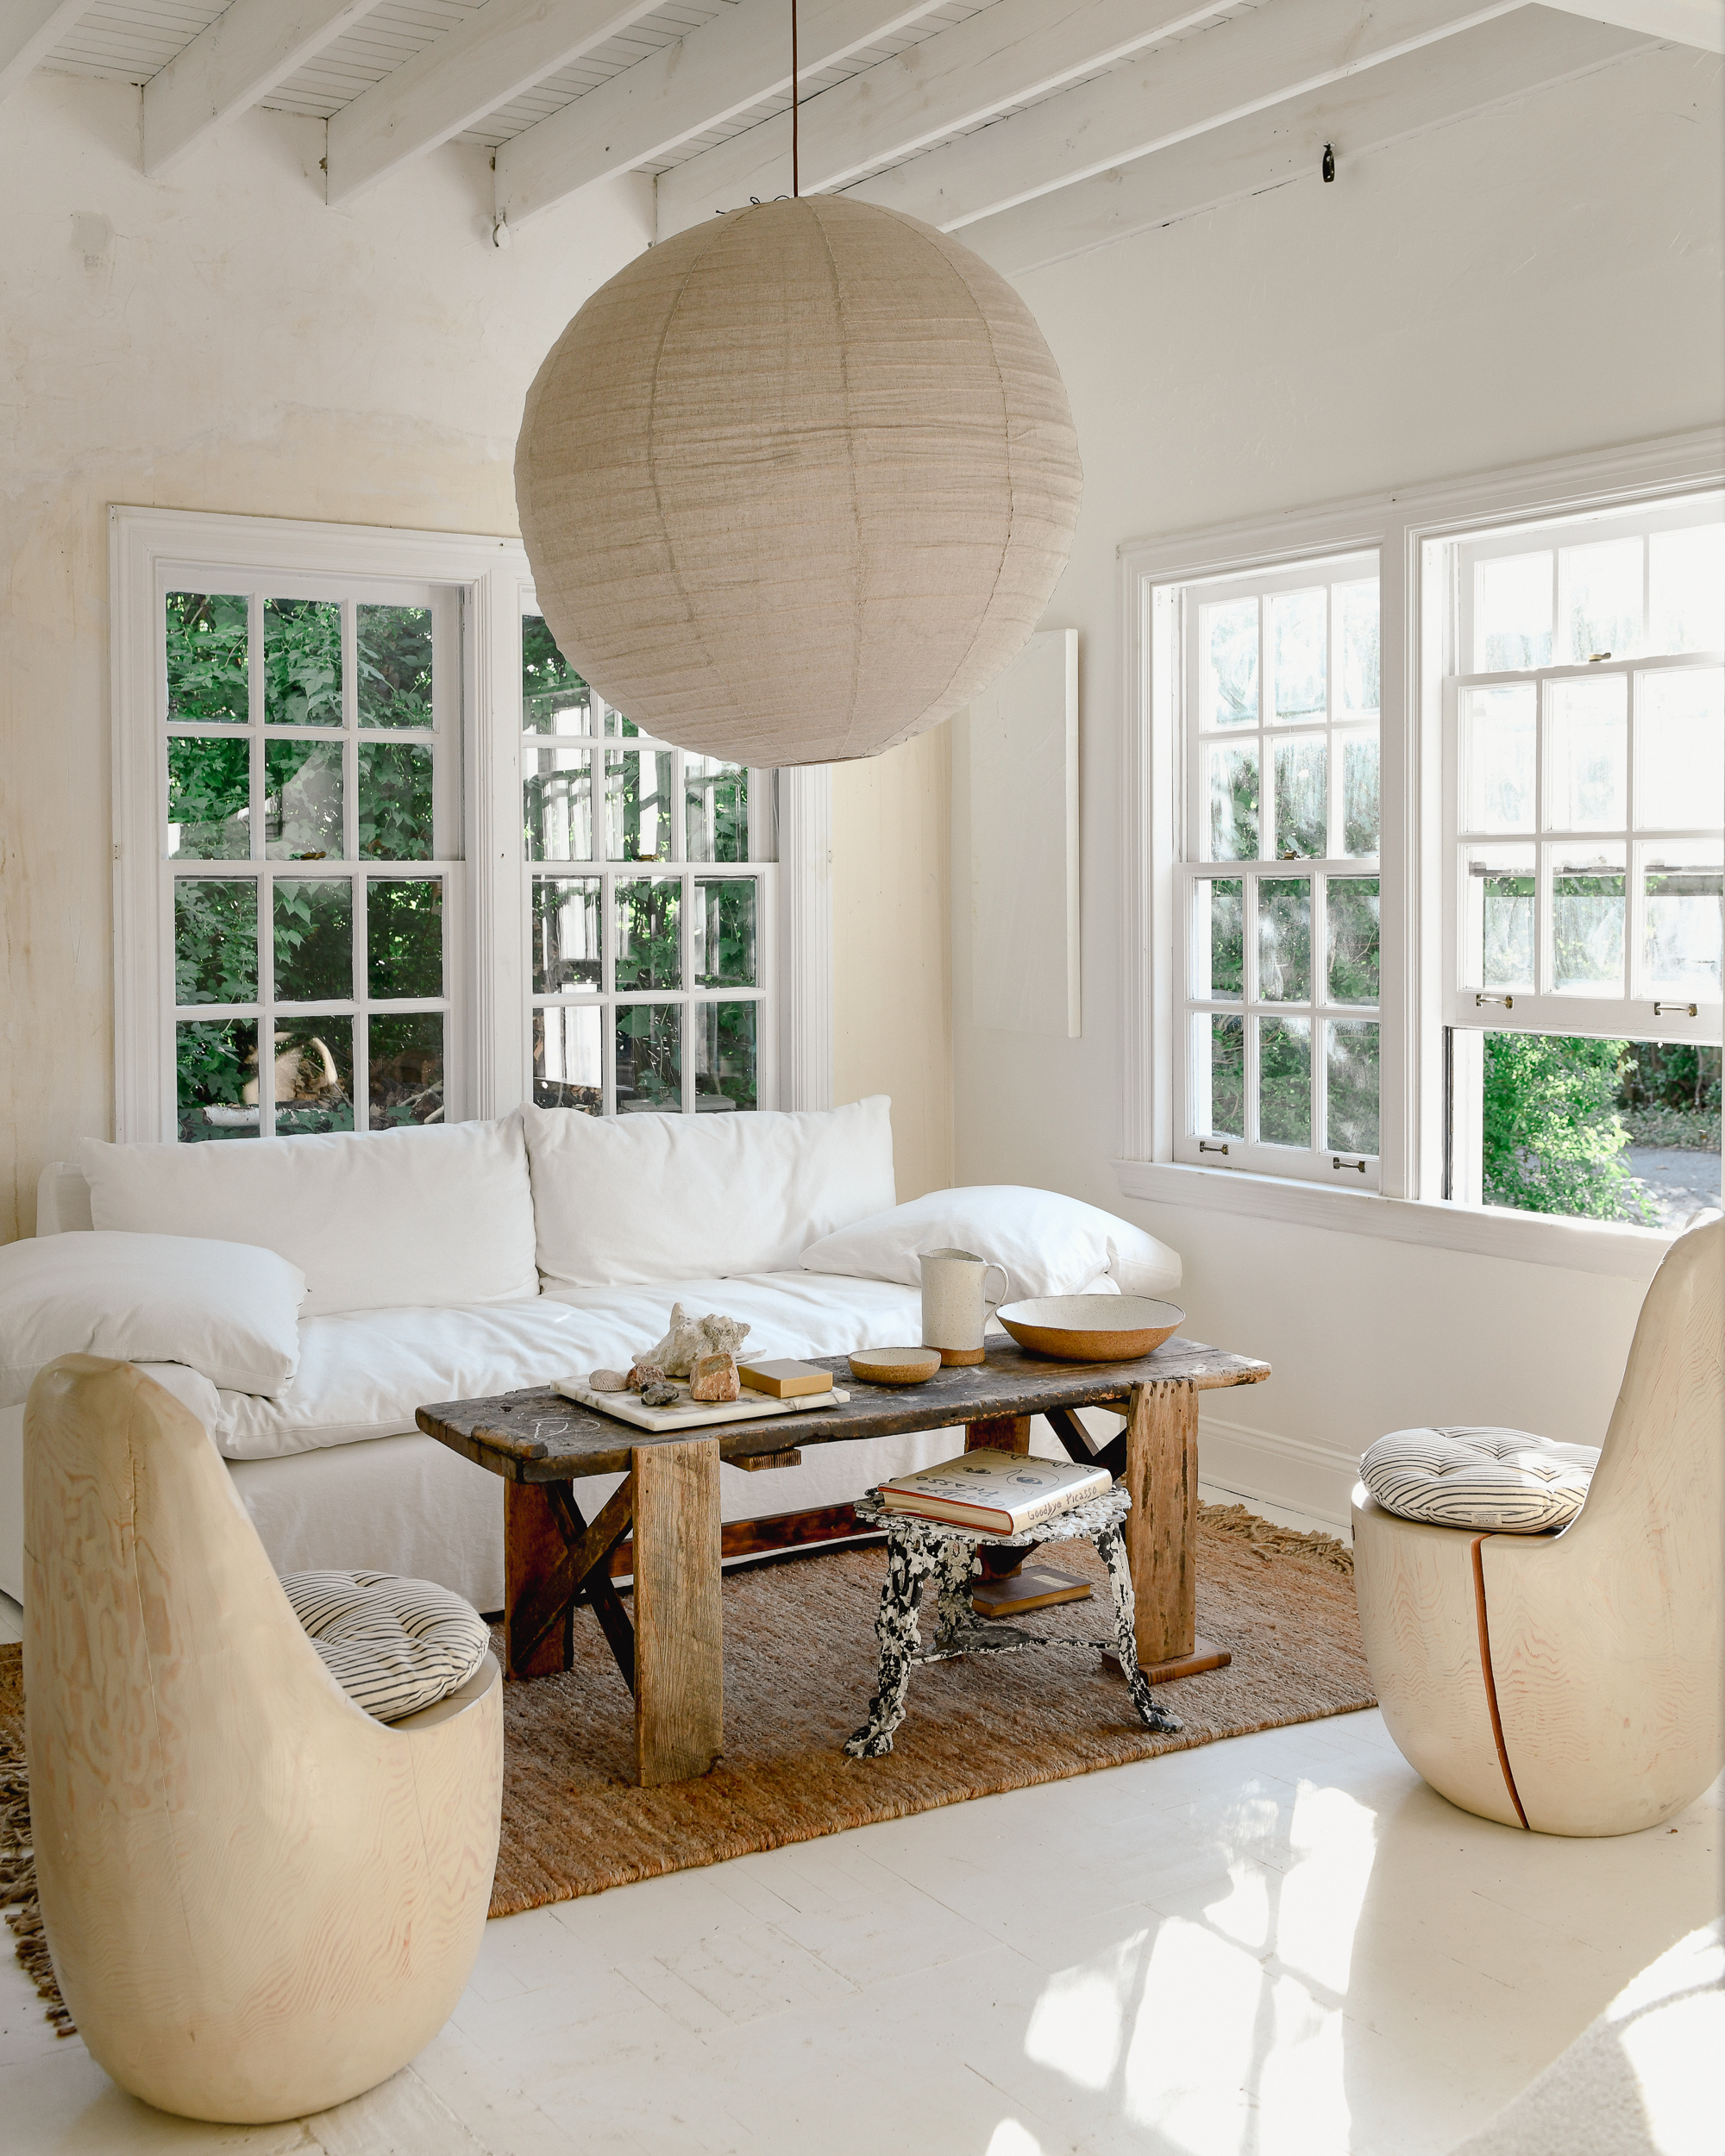 Le salon de Leanne Ford aux murs peints en Blanc naturel et aménagé avec des meubles et accessoires dans des tons de blanc et de beige